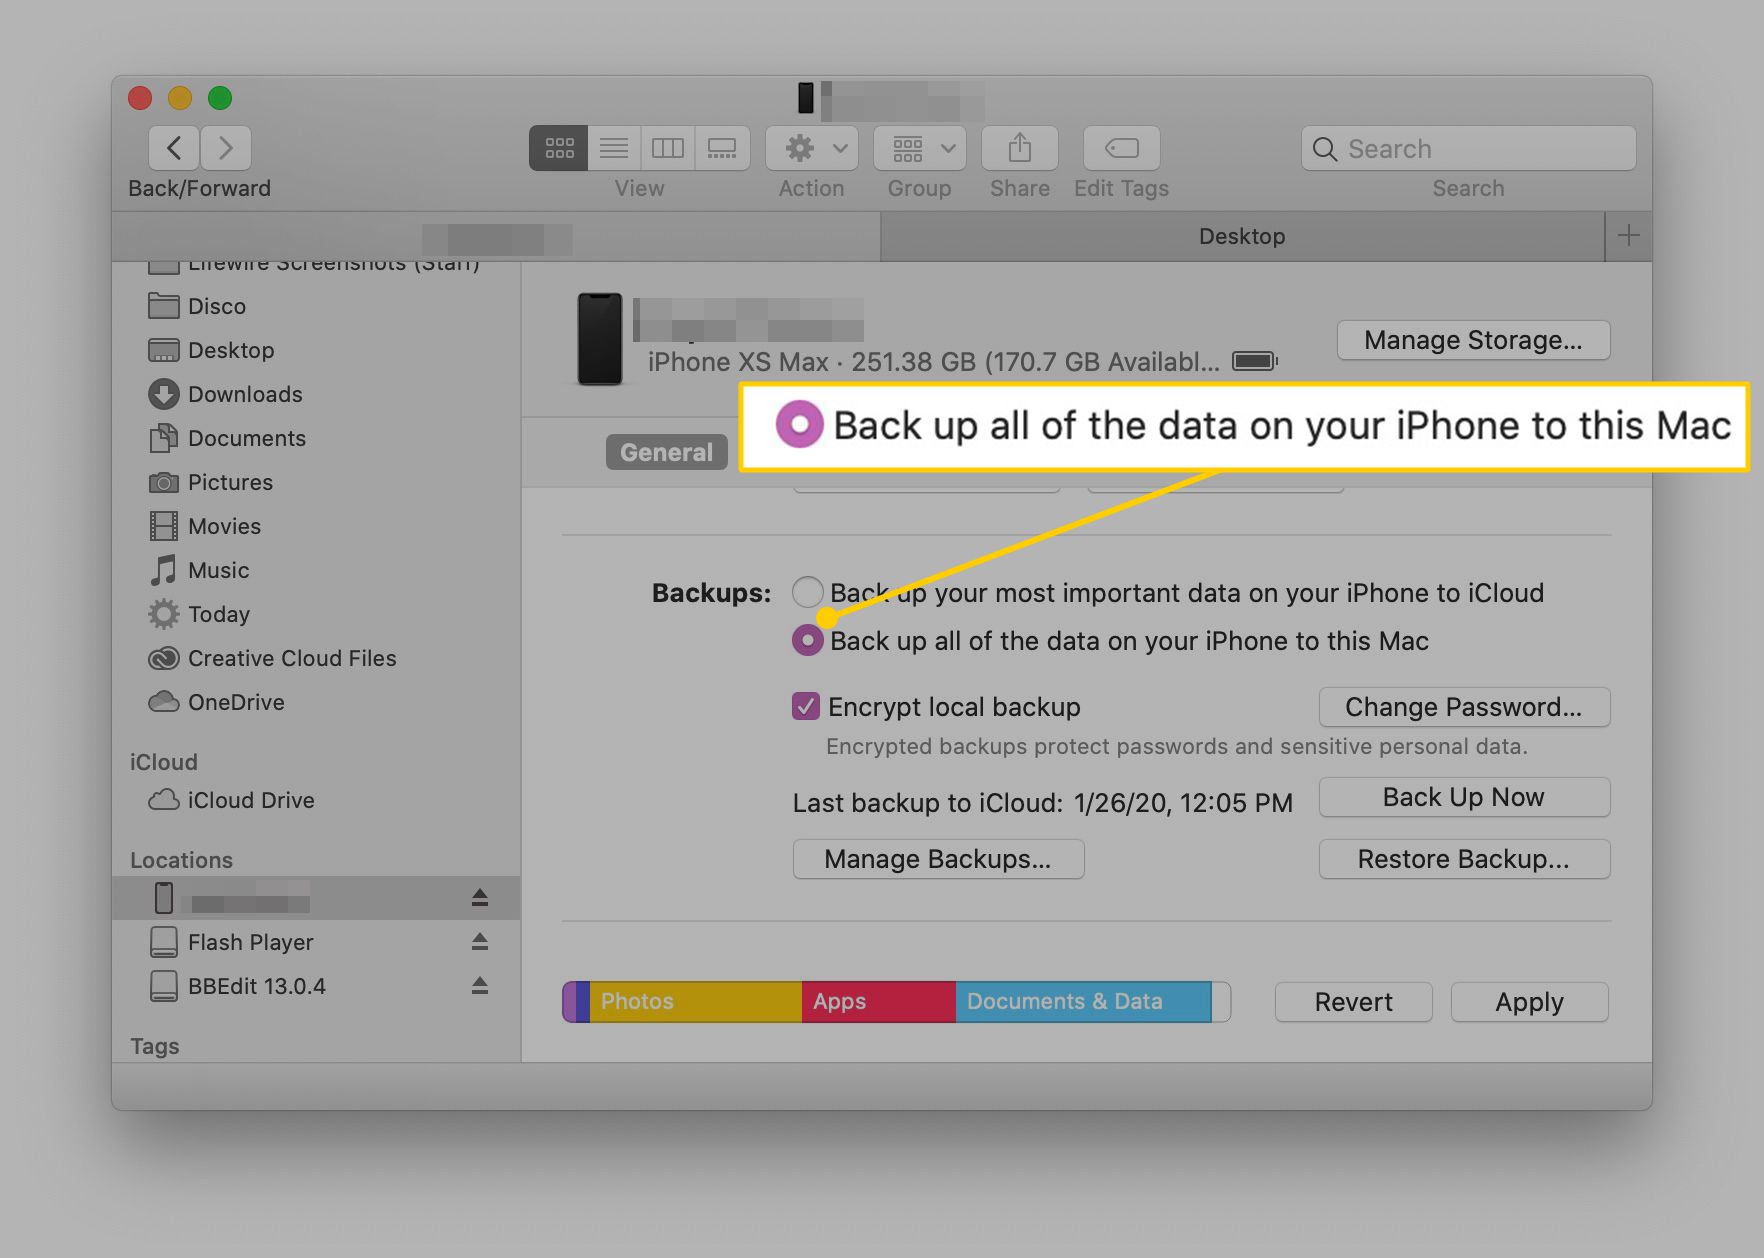 Maak een back-up van alle gegevens op je iPhone op deze Mac